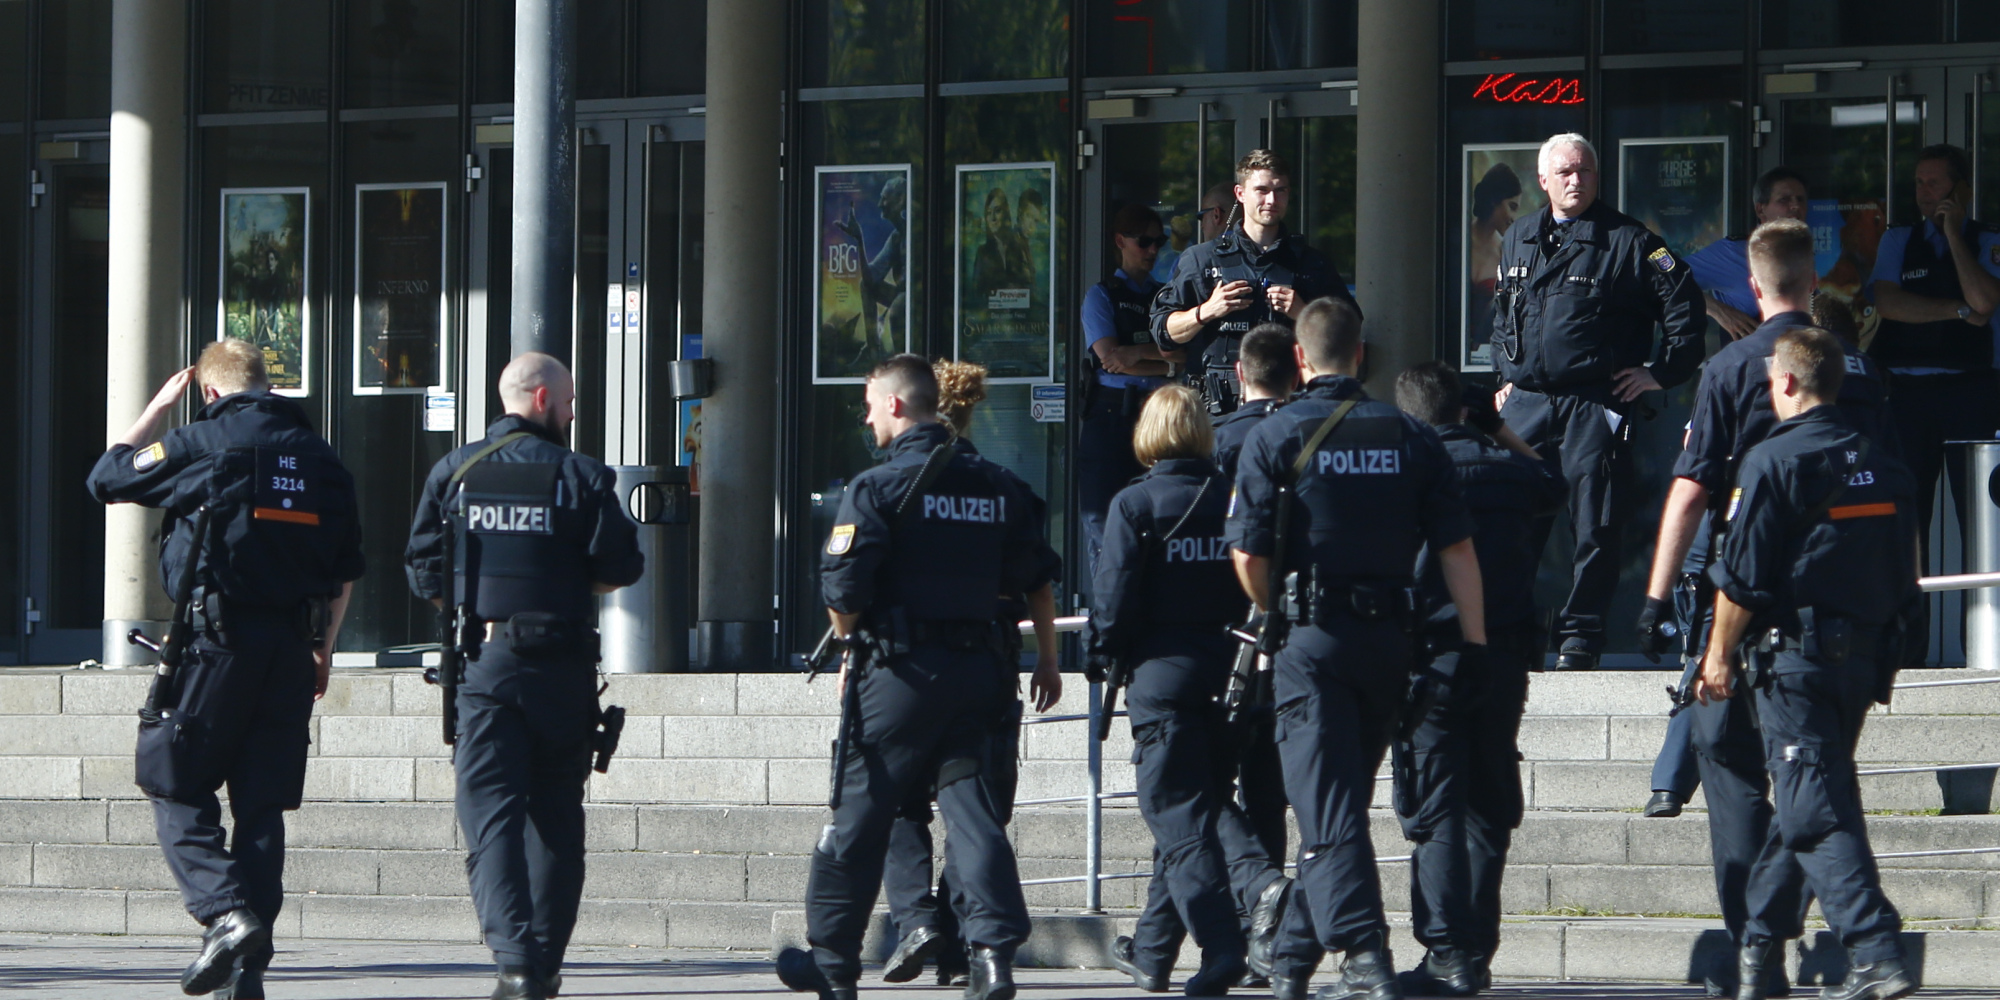   الشرطة الألمانية تحاصر مدرسة بسبب "تقرير تلفزيونى"